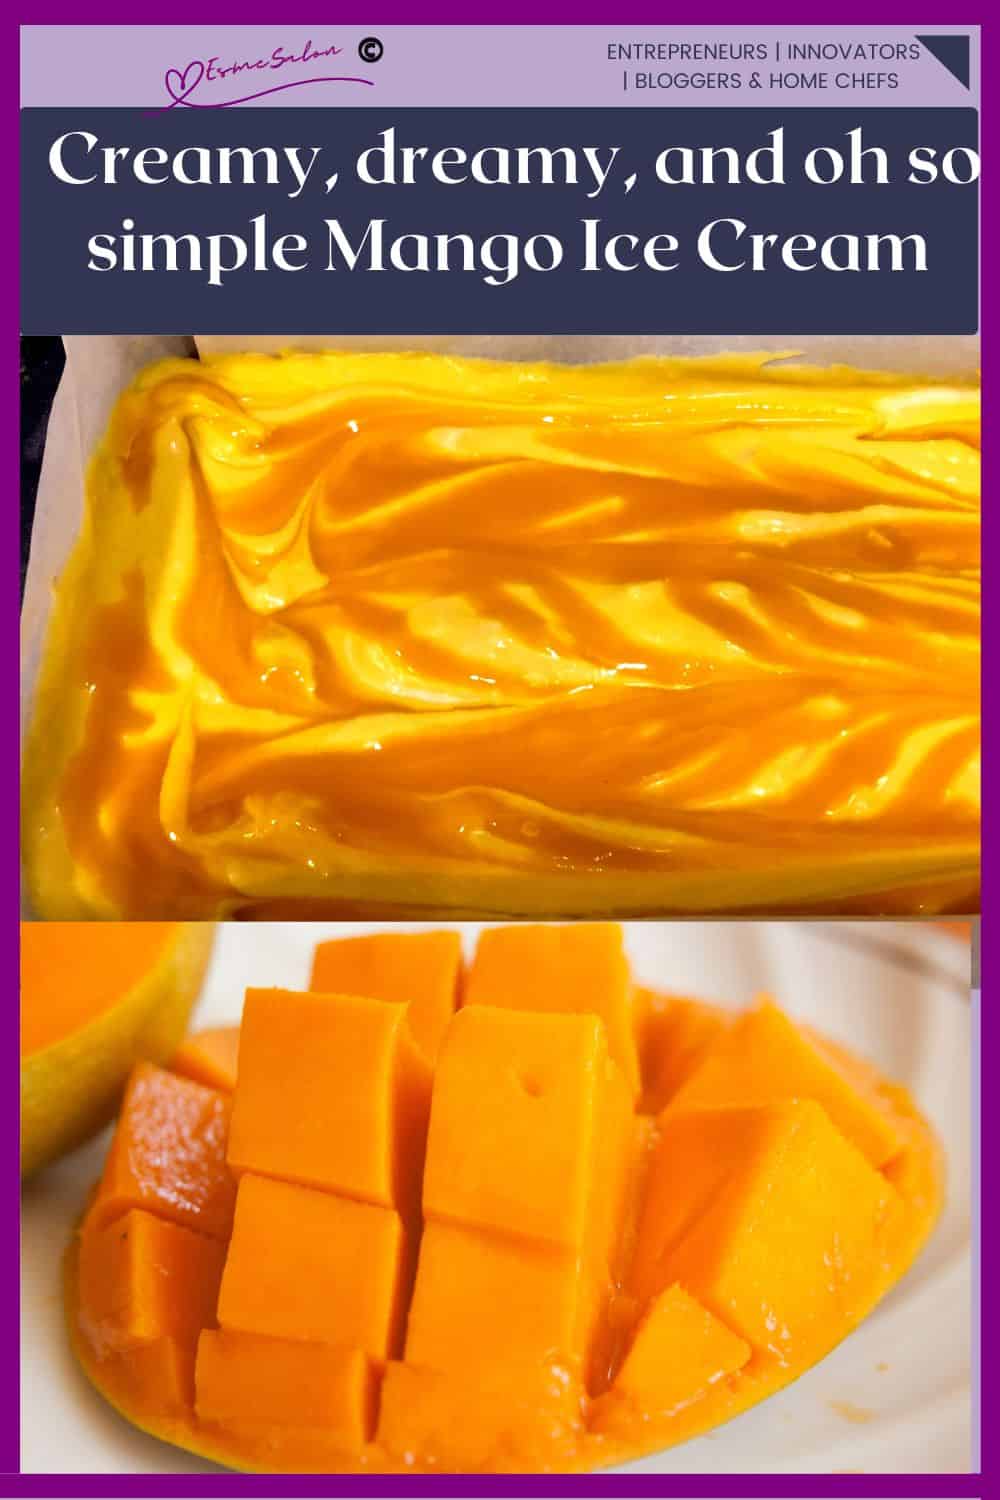 an image of Mango Vegan 3-ingredient No Churn Ice Cream